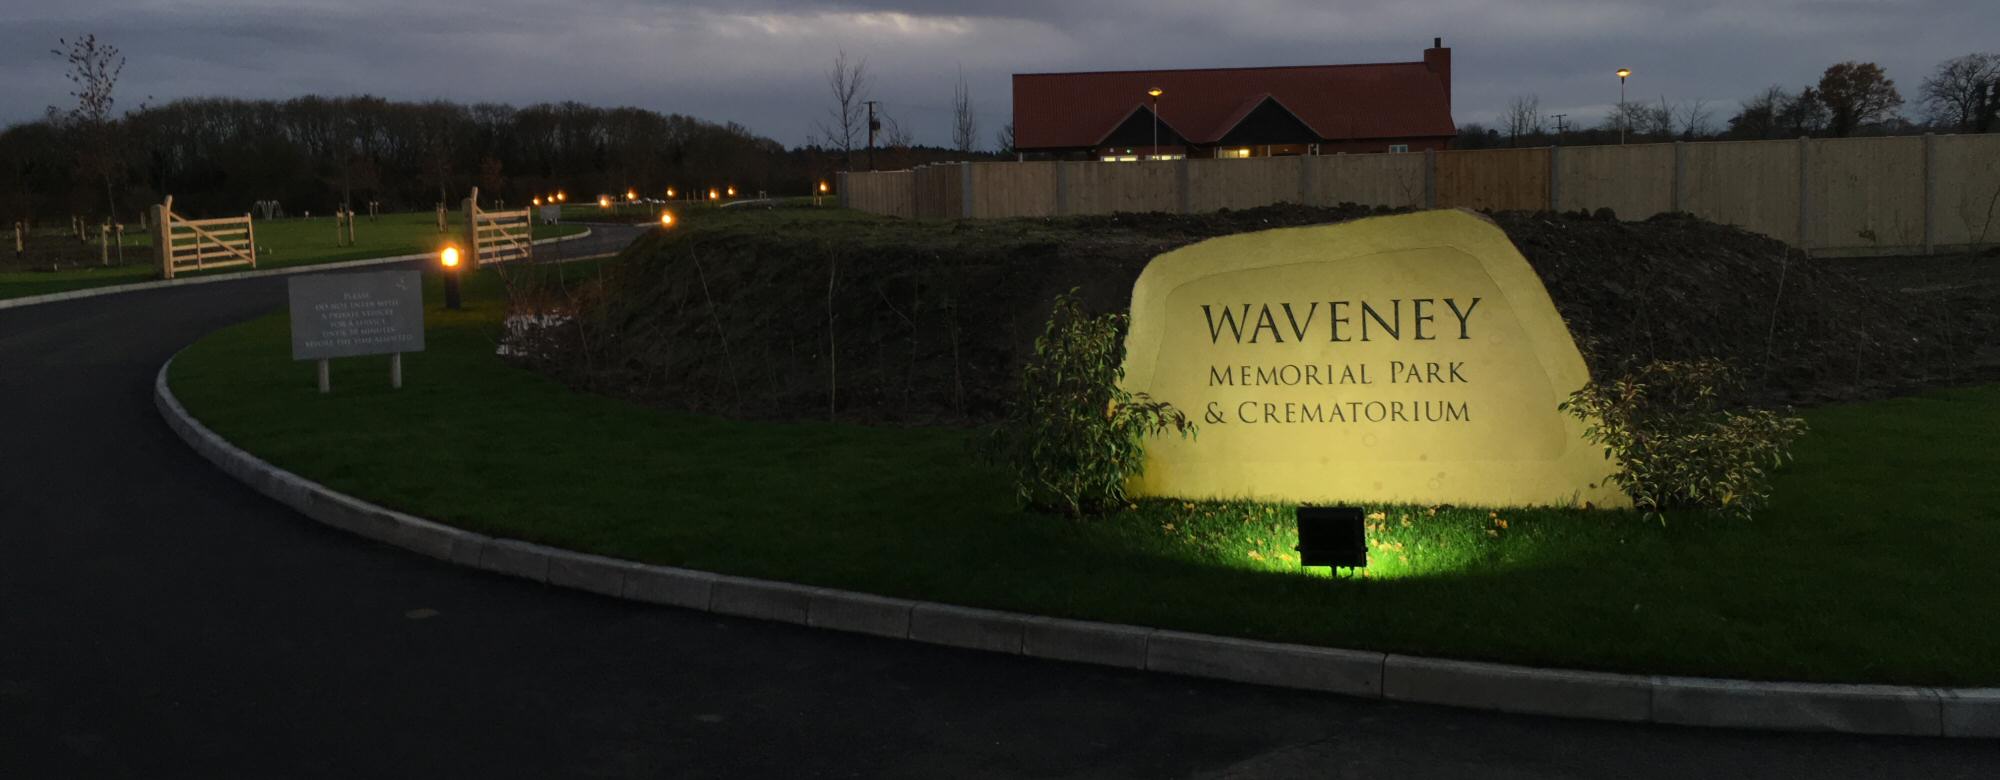 Waveney Memorial Park and Crematorium